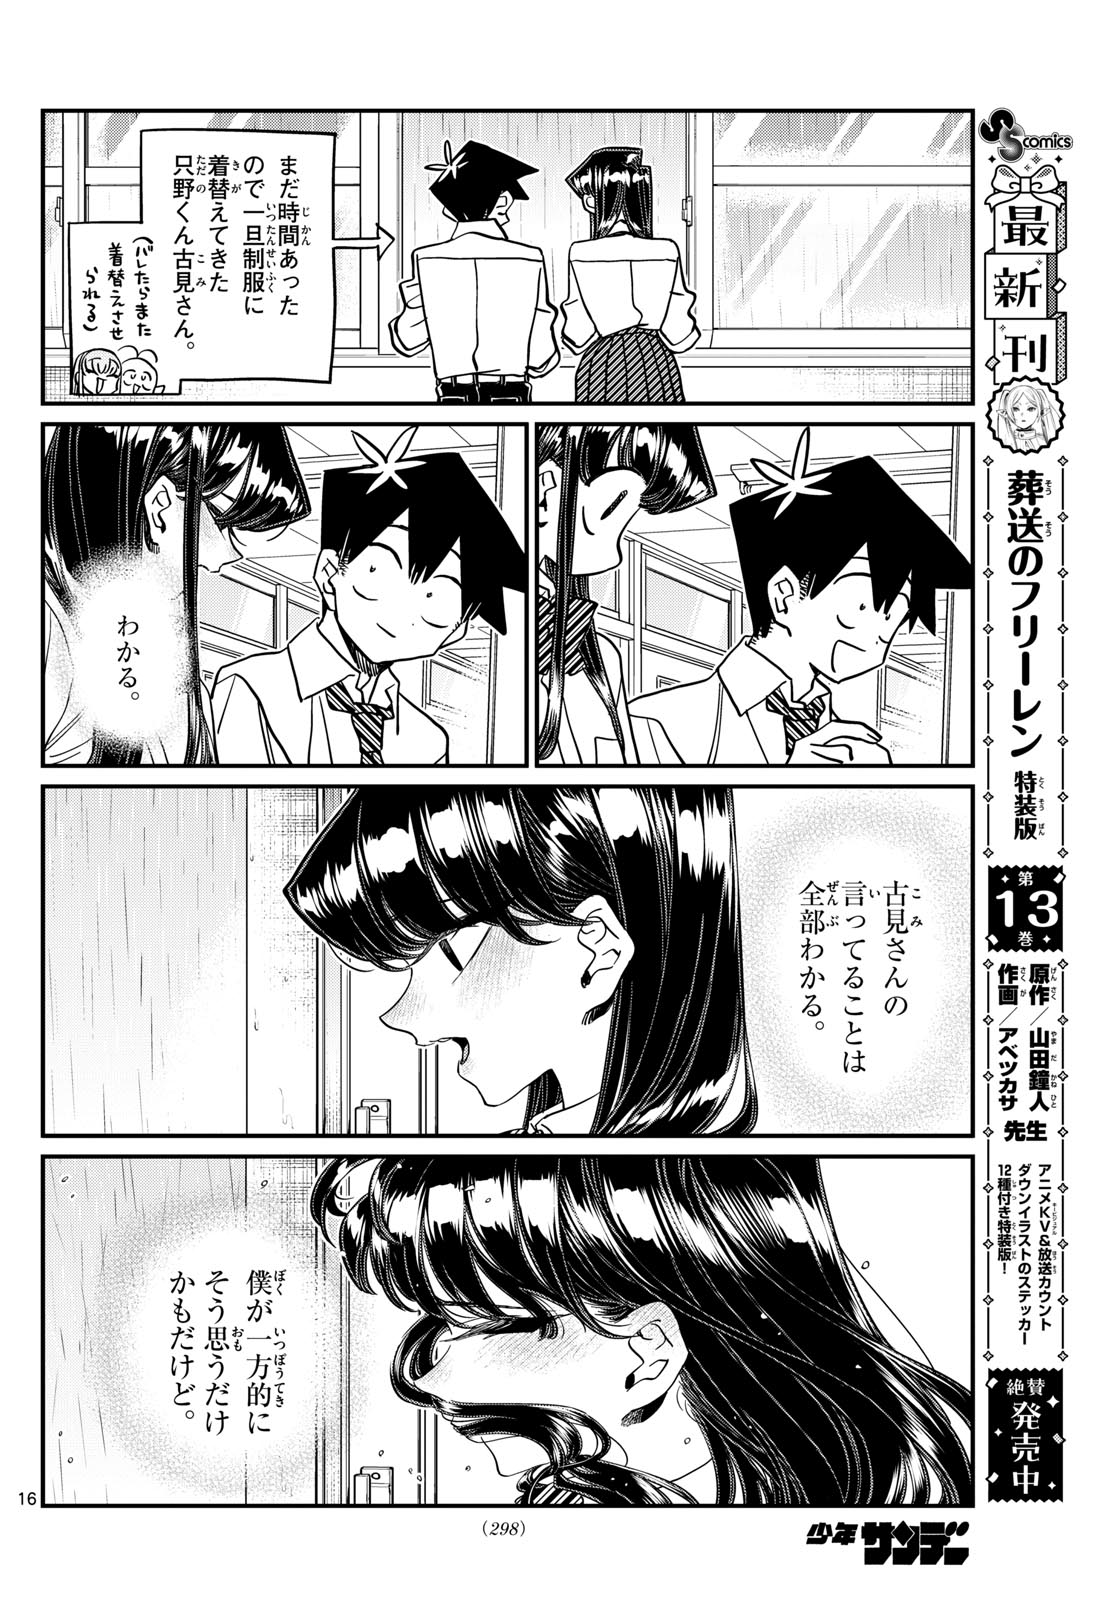 Komi-san wa Komyushou Desu - Chapter 455 - Page 16